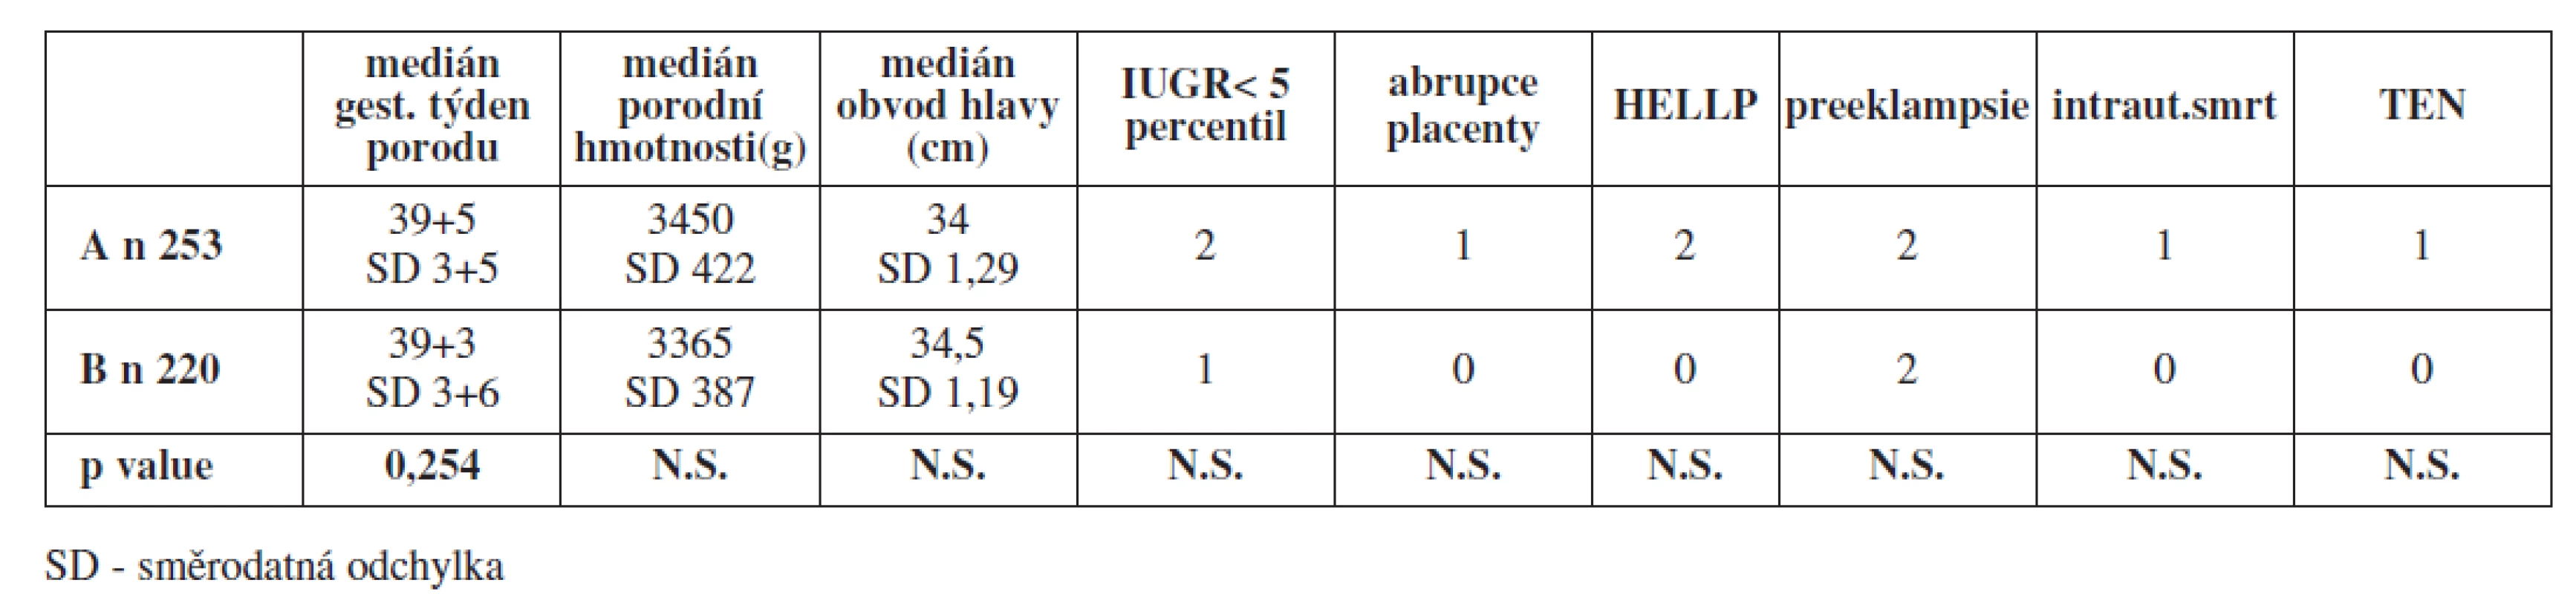 Srovnání sledovaných perinatologických ukazatelů a závažných pozdních těhotenských komplikací u asymptomatických nosiček trombofilní mutace FV Leiden a FII protrombin v heterozygotní konfiguraci s profylaxí LMWH v průběhu těhotenství (A) a bez ní (B)